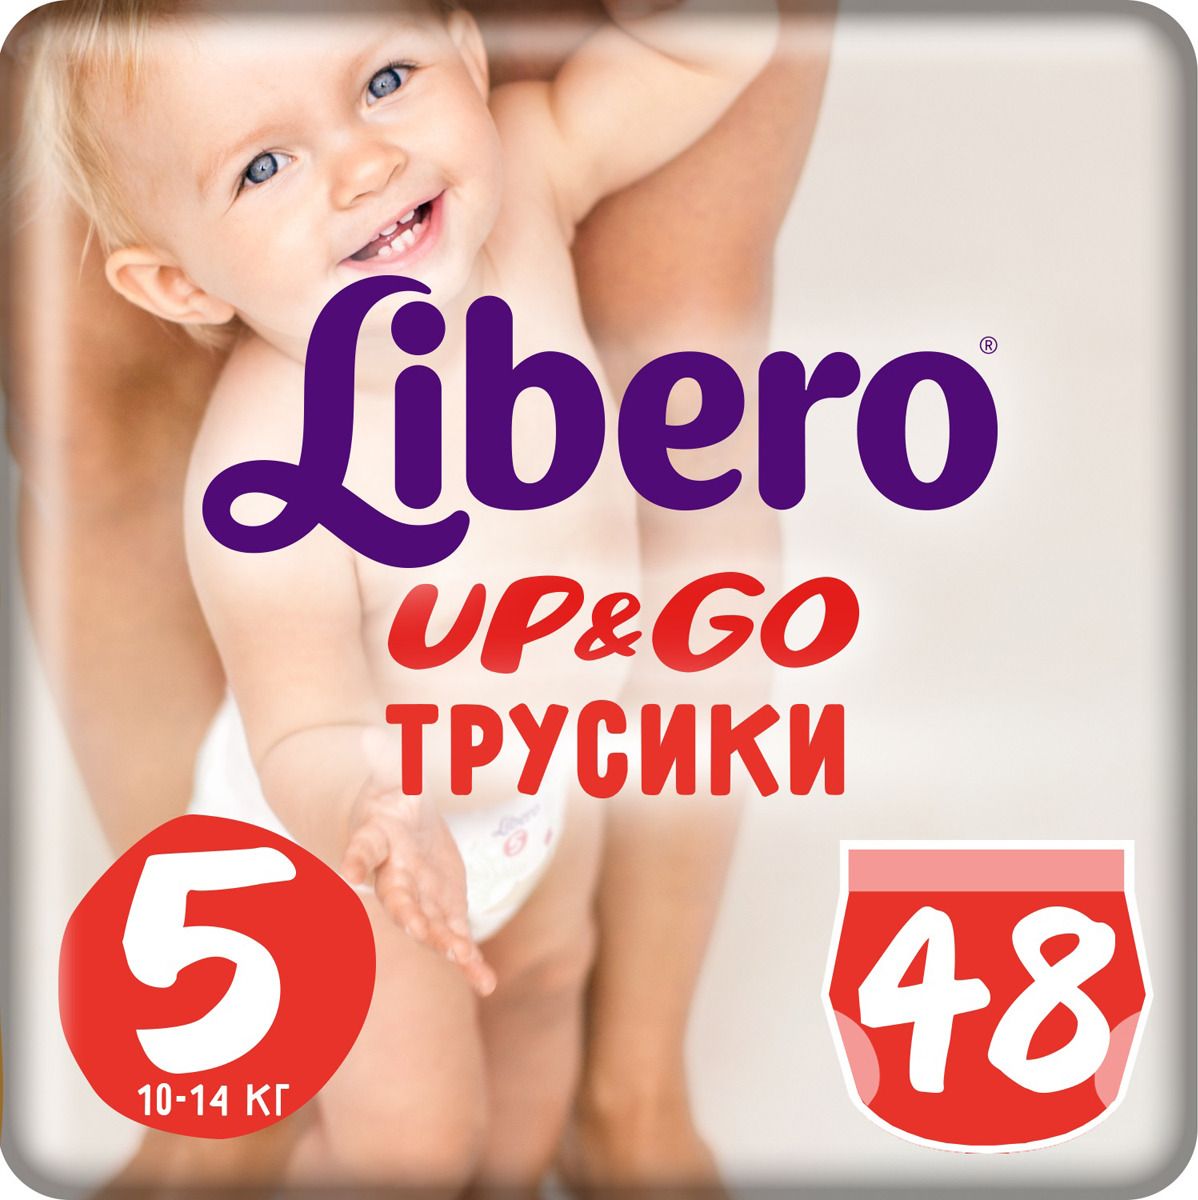 Libero  Up&Go Size 5 (10-14 ) 48 